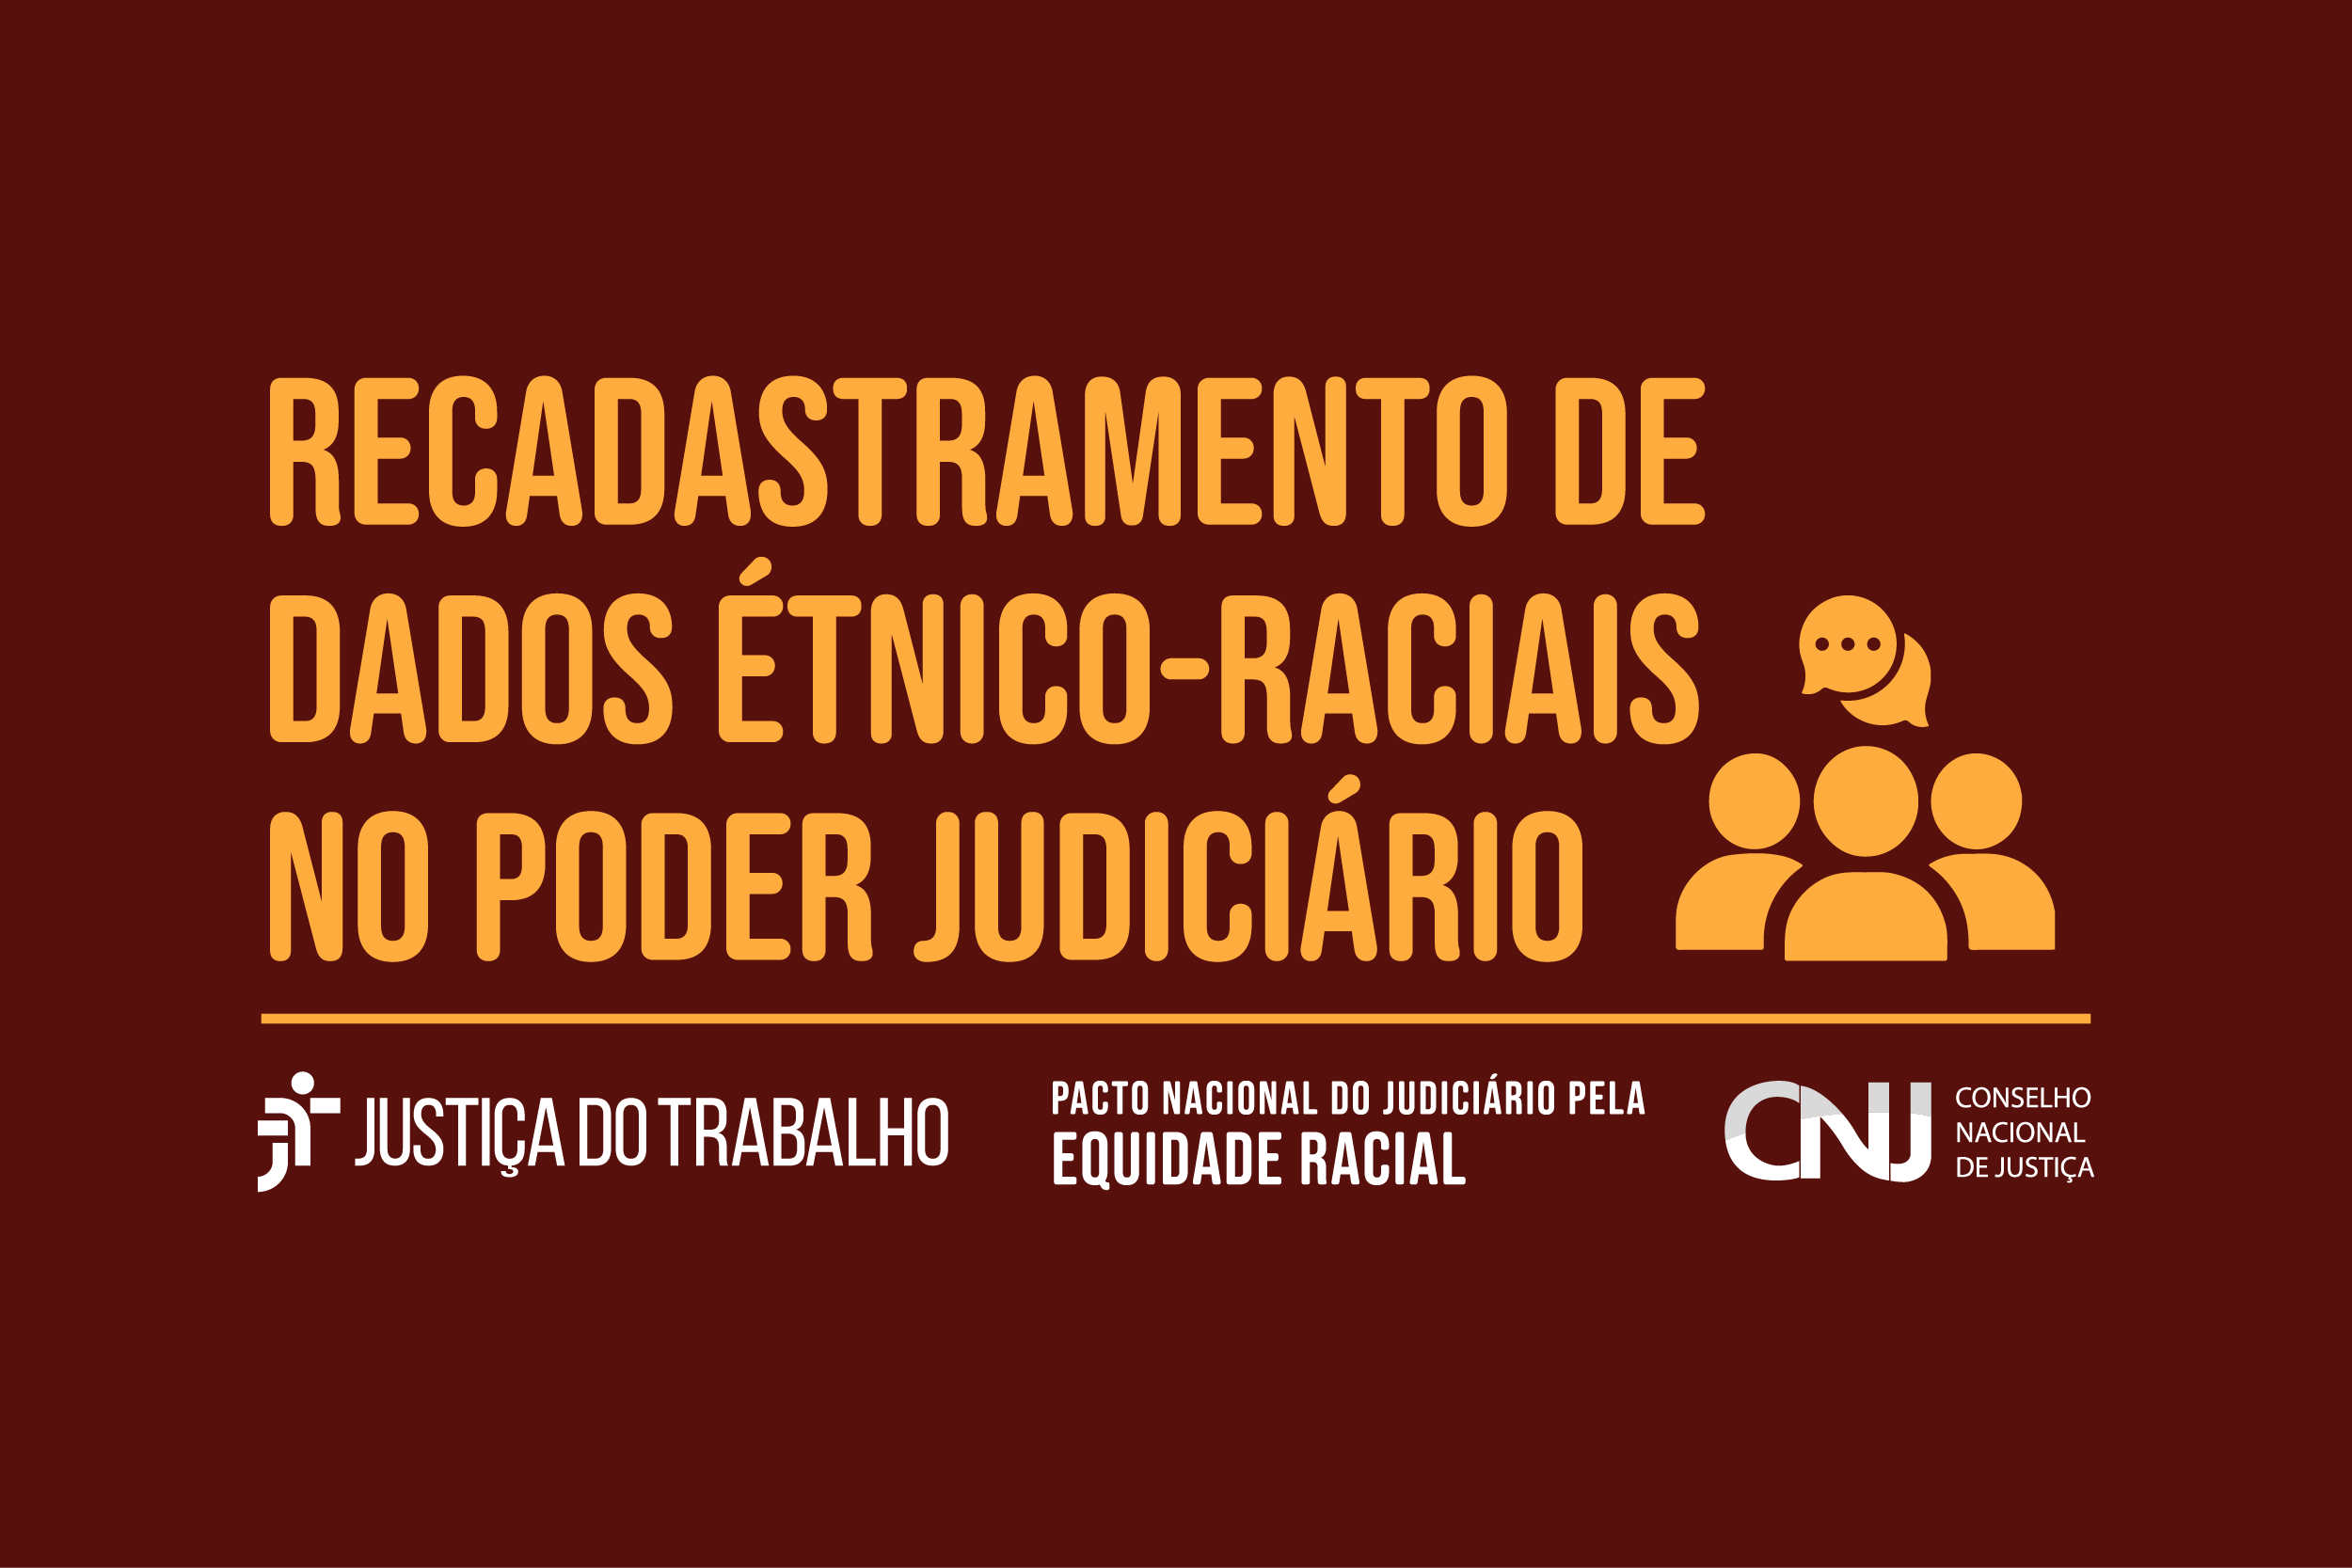 Recadastramento de dados étnico-raciais no Poder Judiciária.